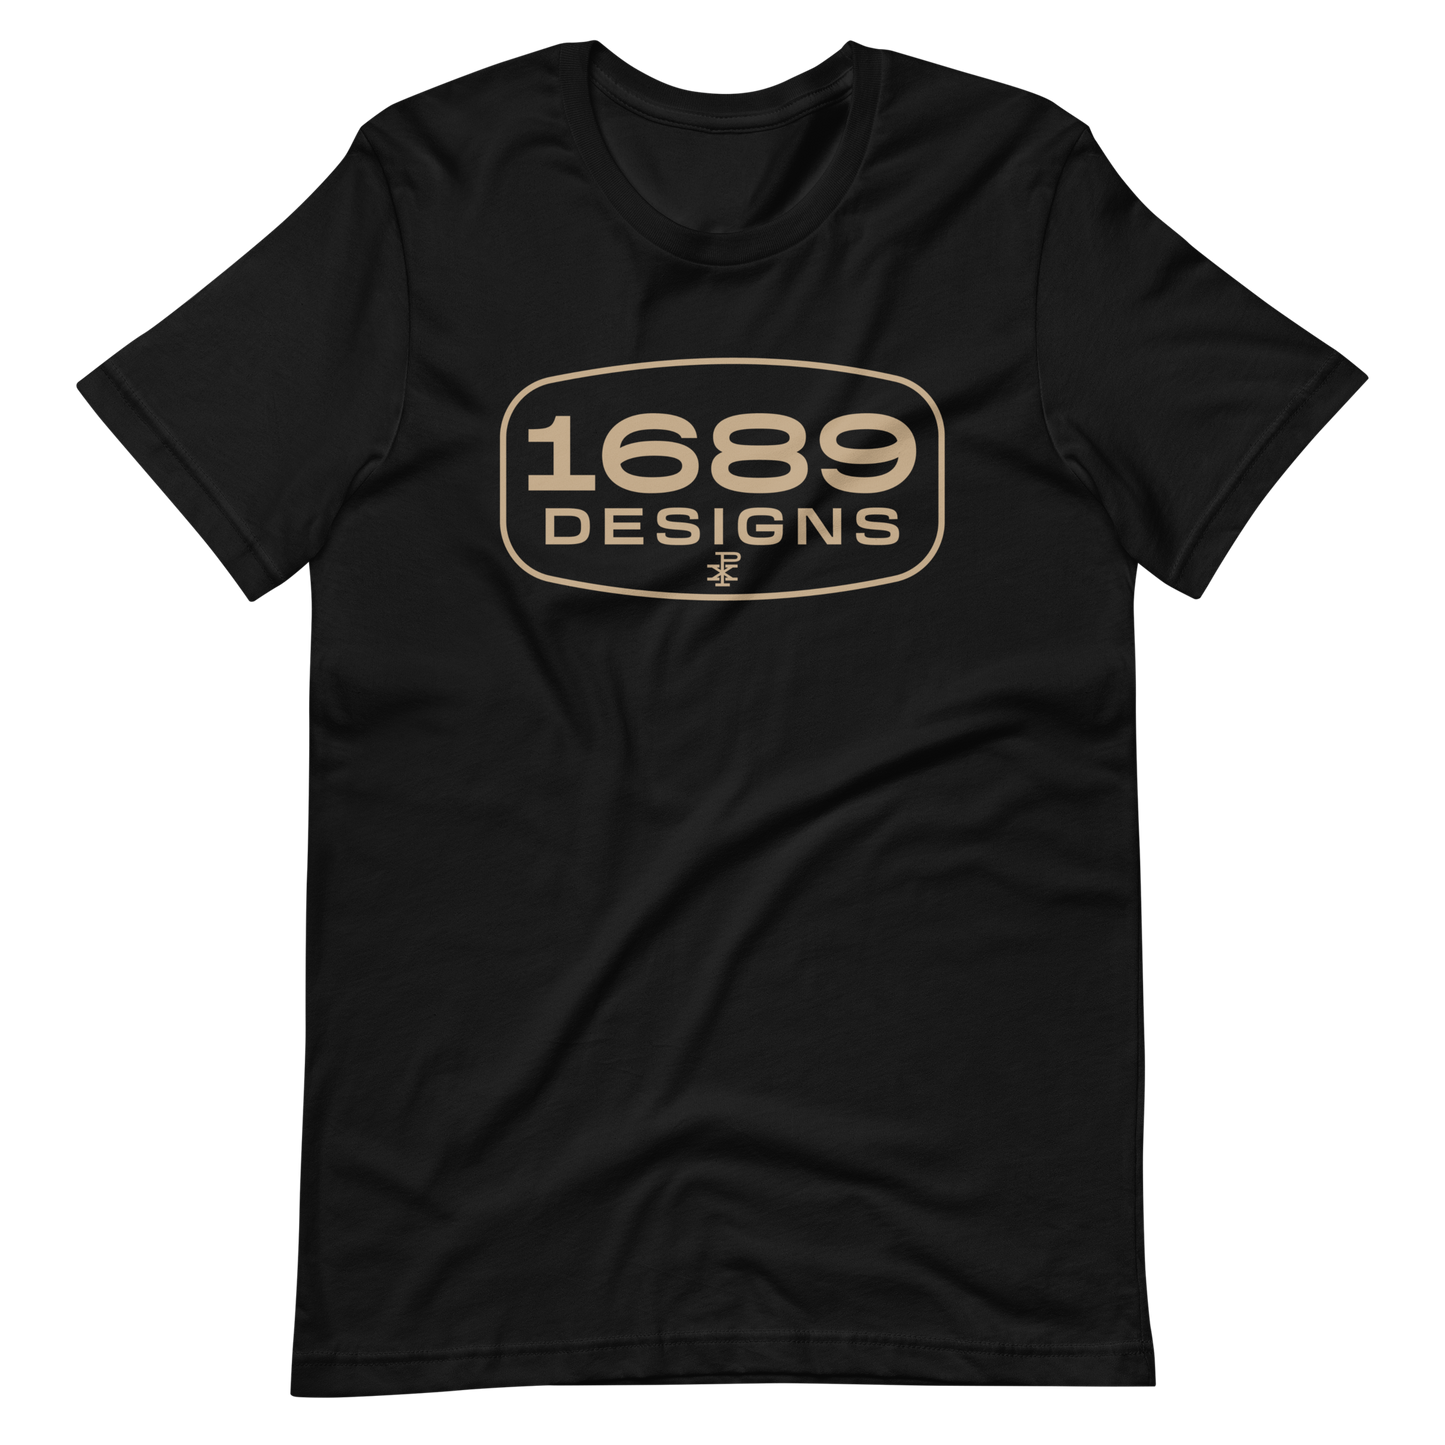 1689 Designs T-Shirt